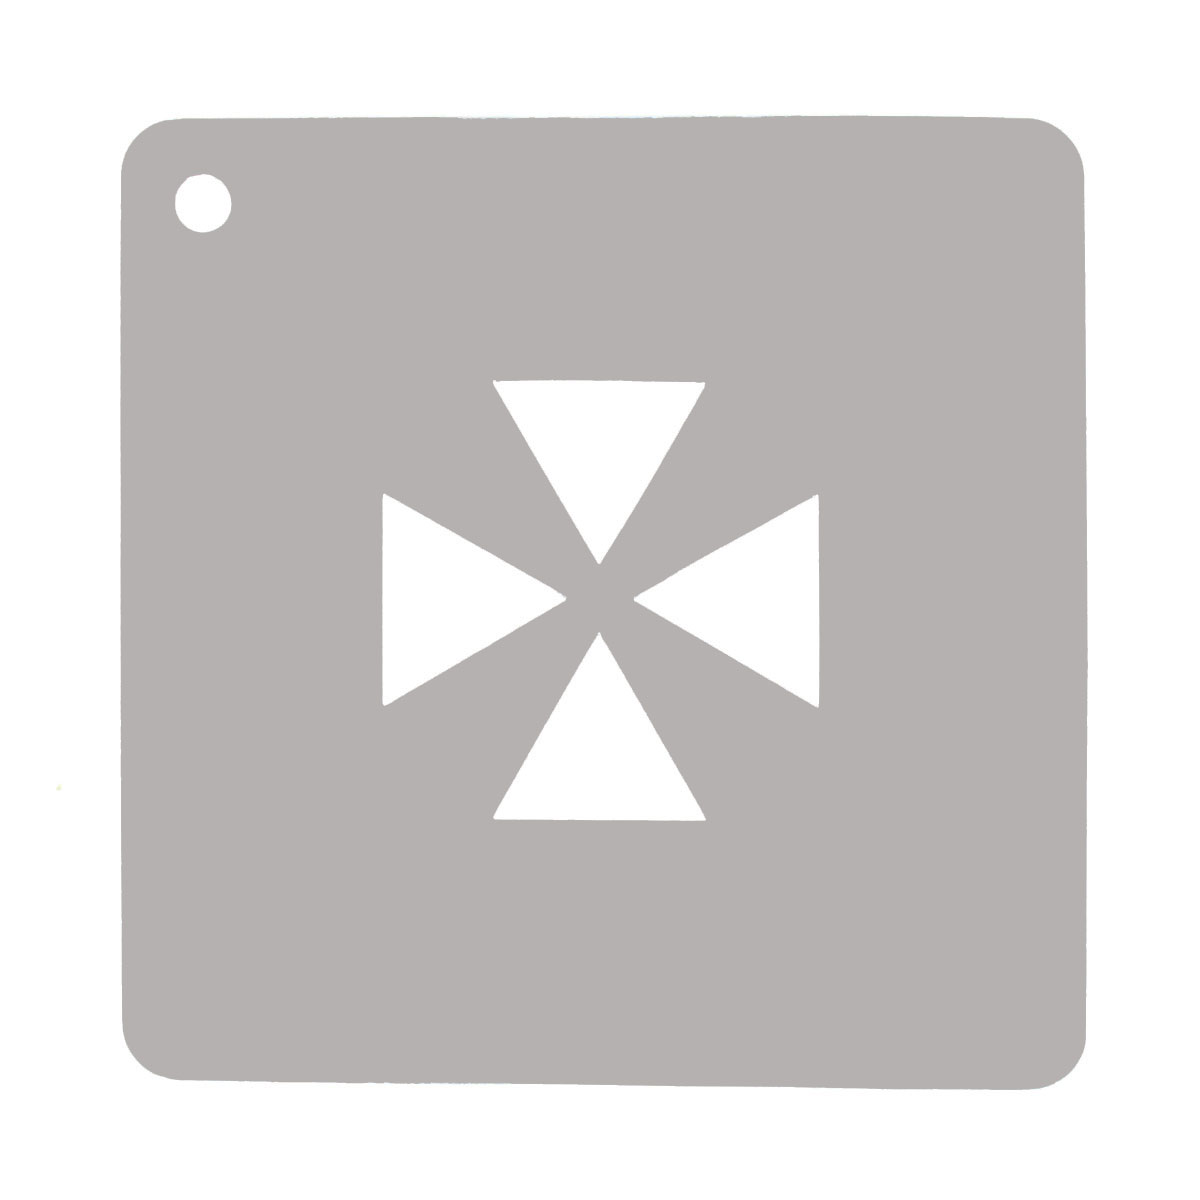 Markierschablone aus Zinkblech, 0,3 mm Symbol "Zielmarke" Bildgröße 80x80 mm